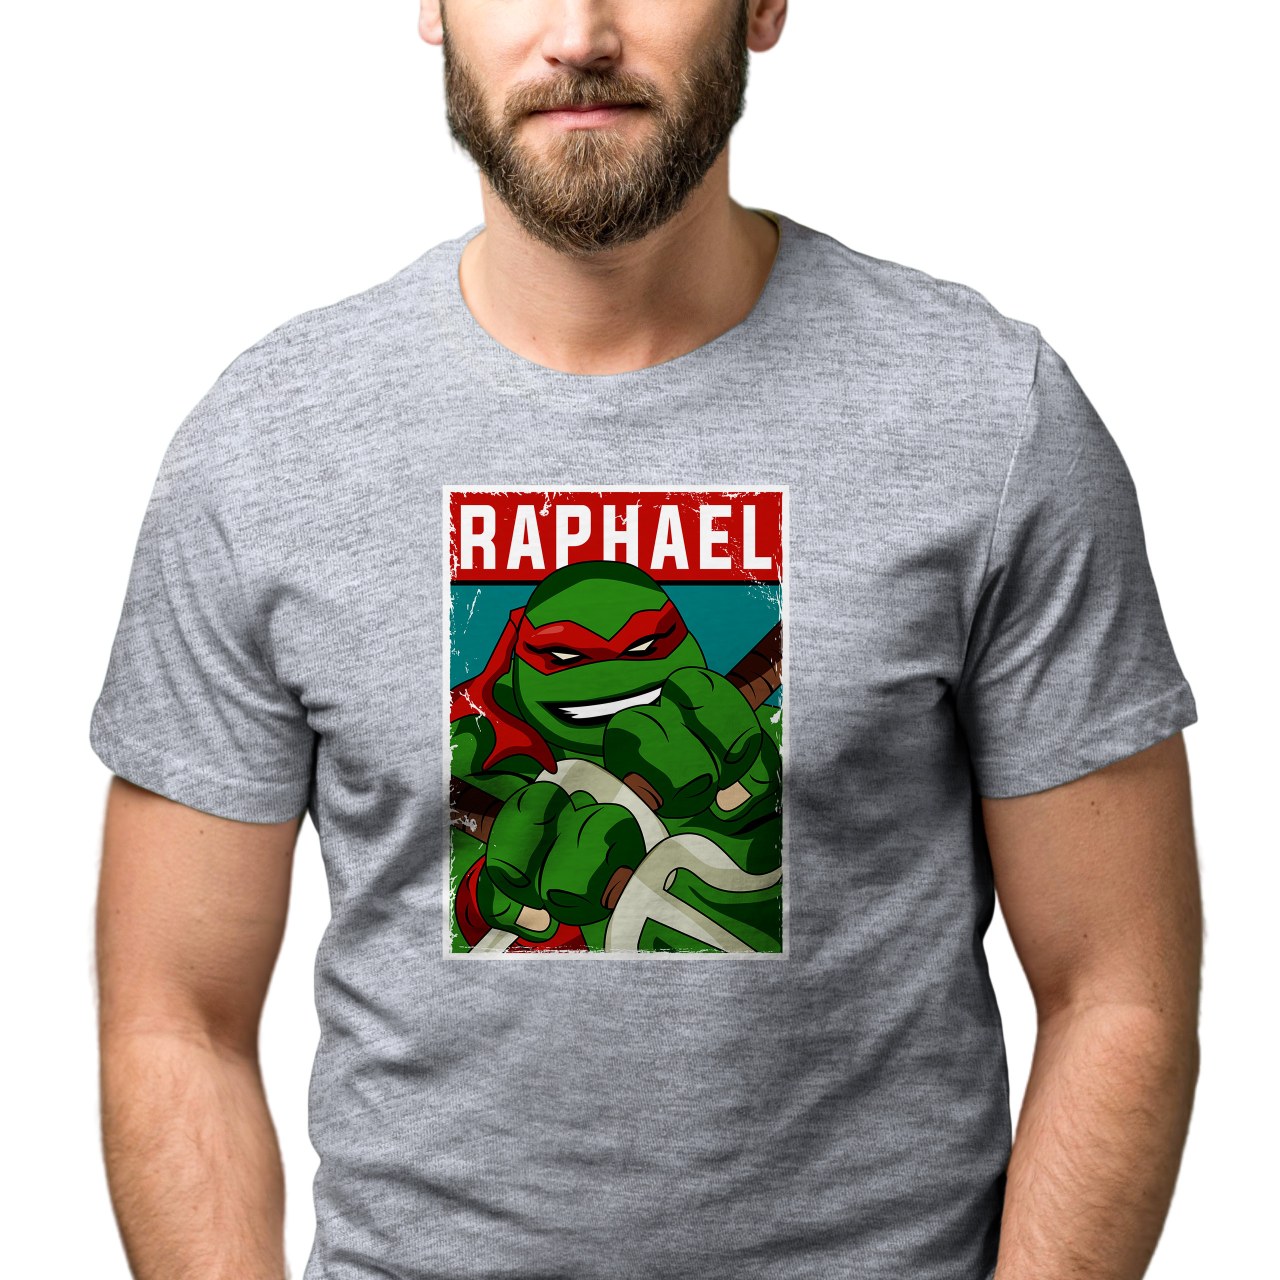 Pánské tričko s potiskem “Raphael"